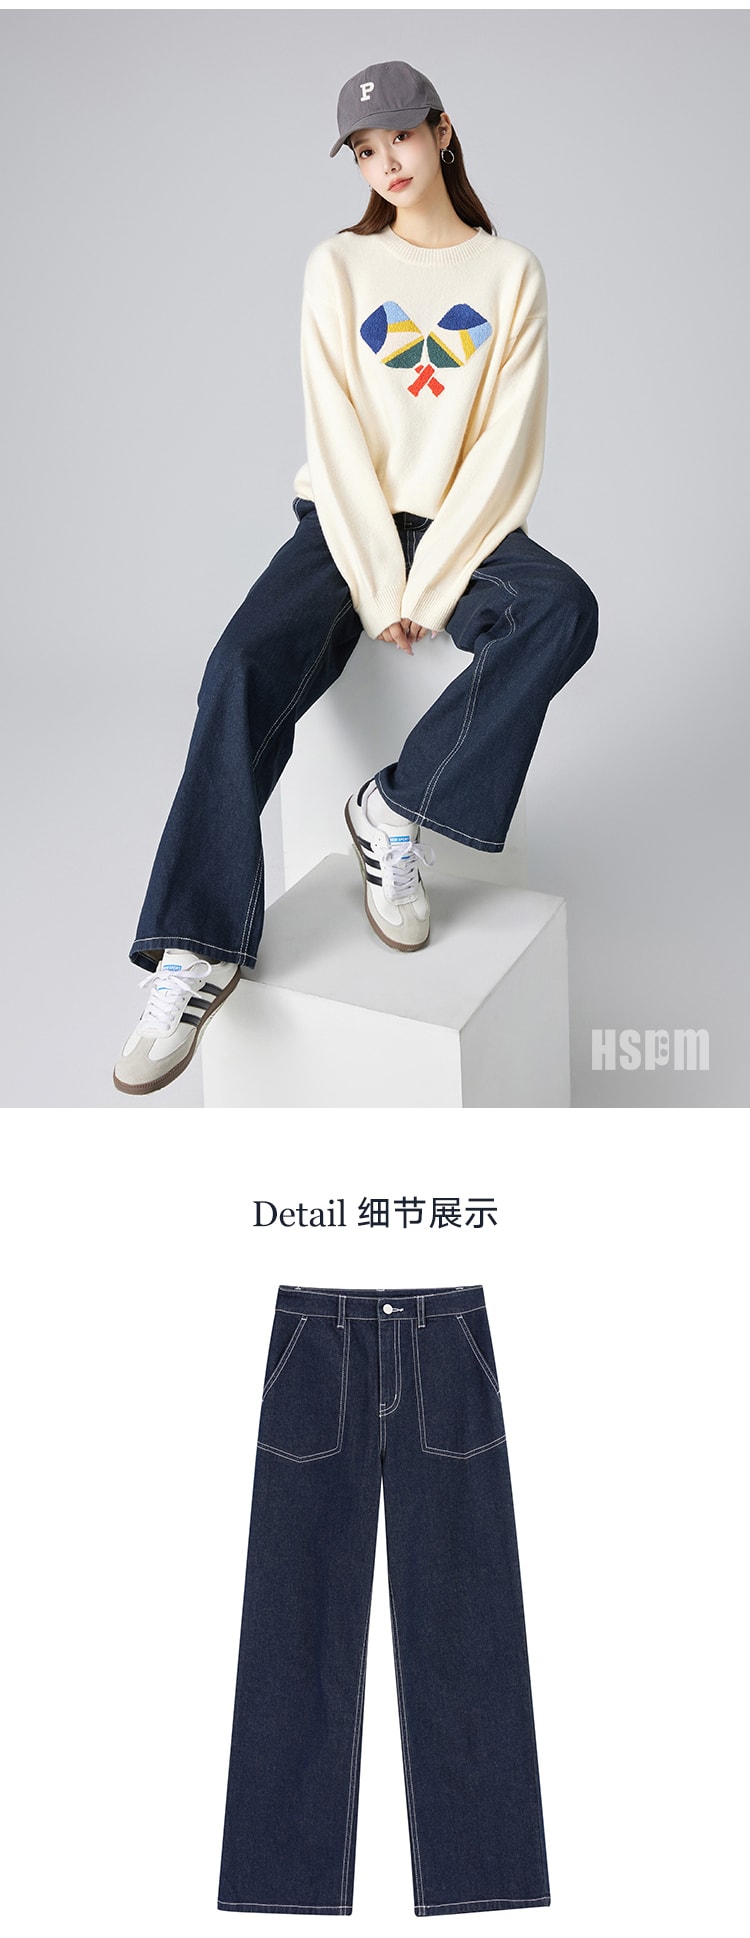 【中国直邮】HSPM 新款休闲百搭直筒牛仔裤 深蓝色 S